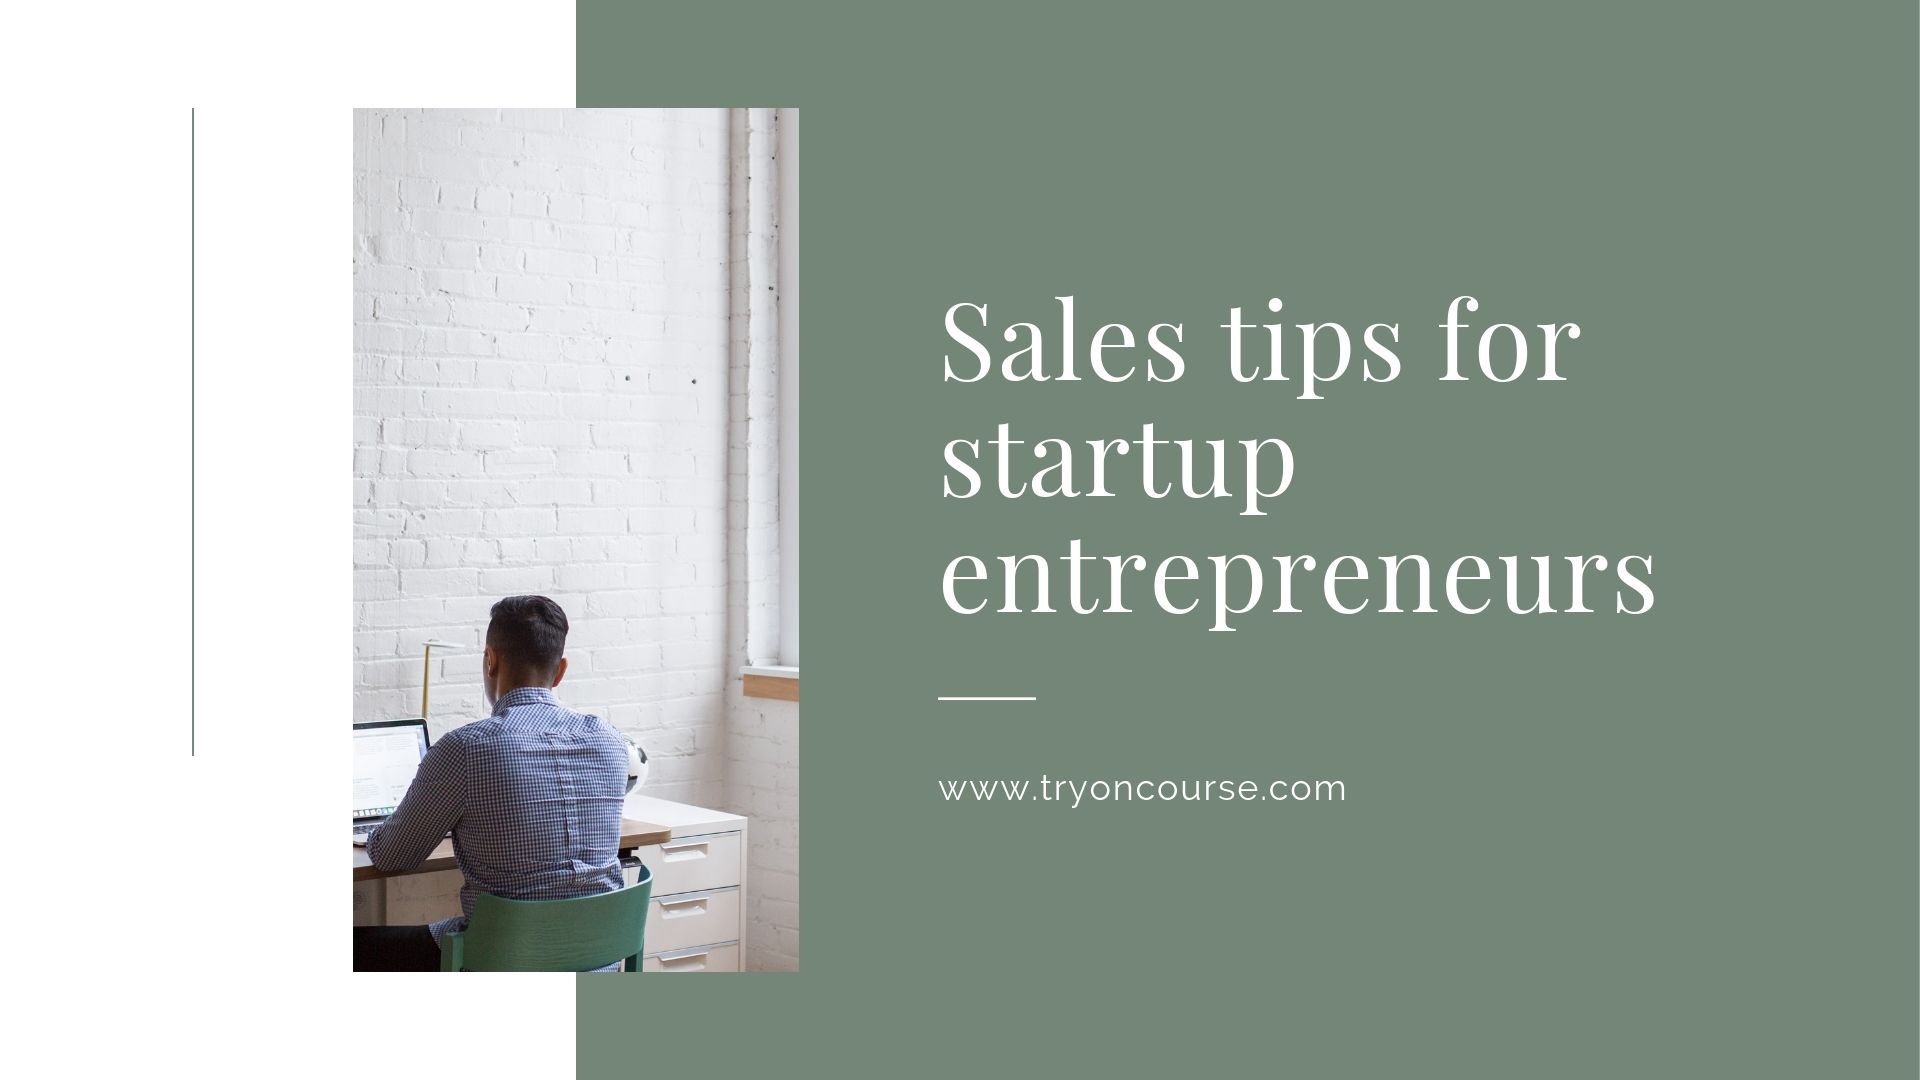 Sales tips for startup entrepreneurs